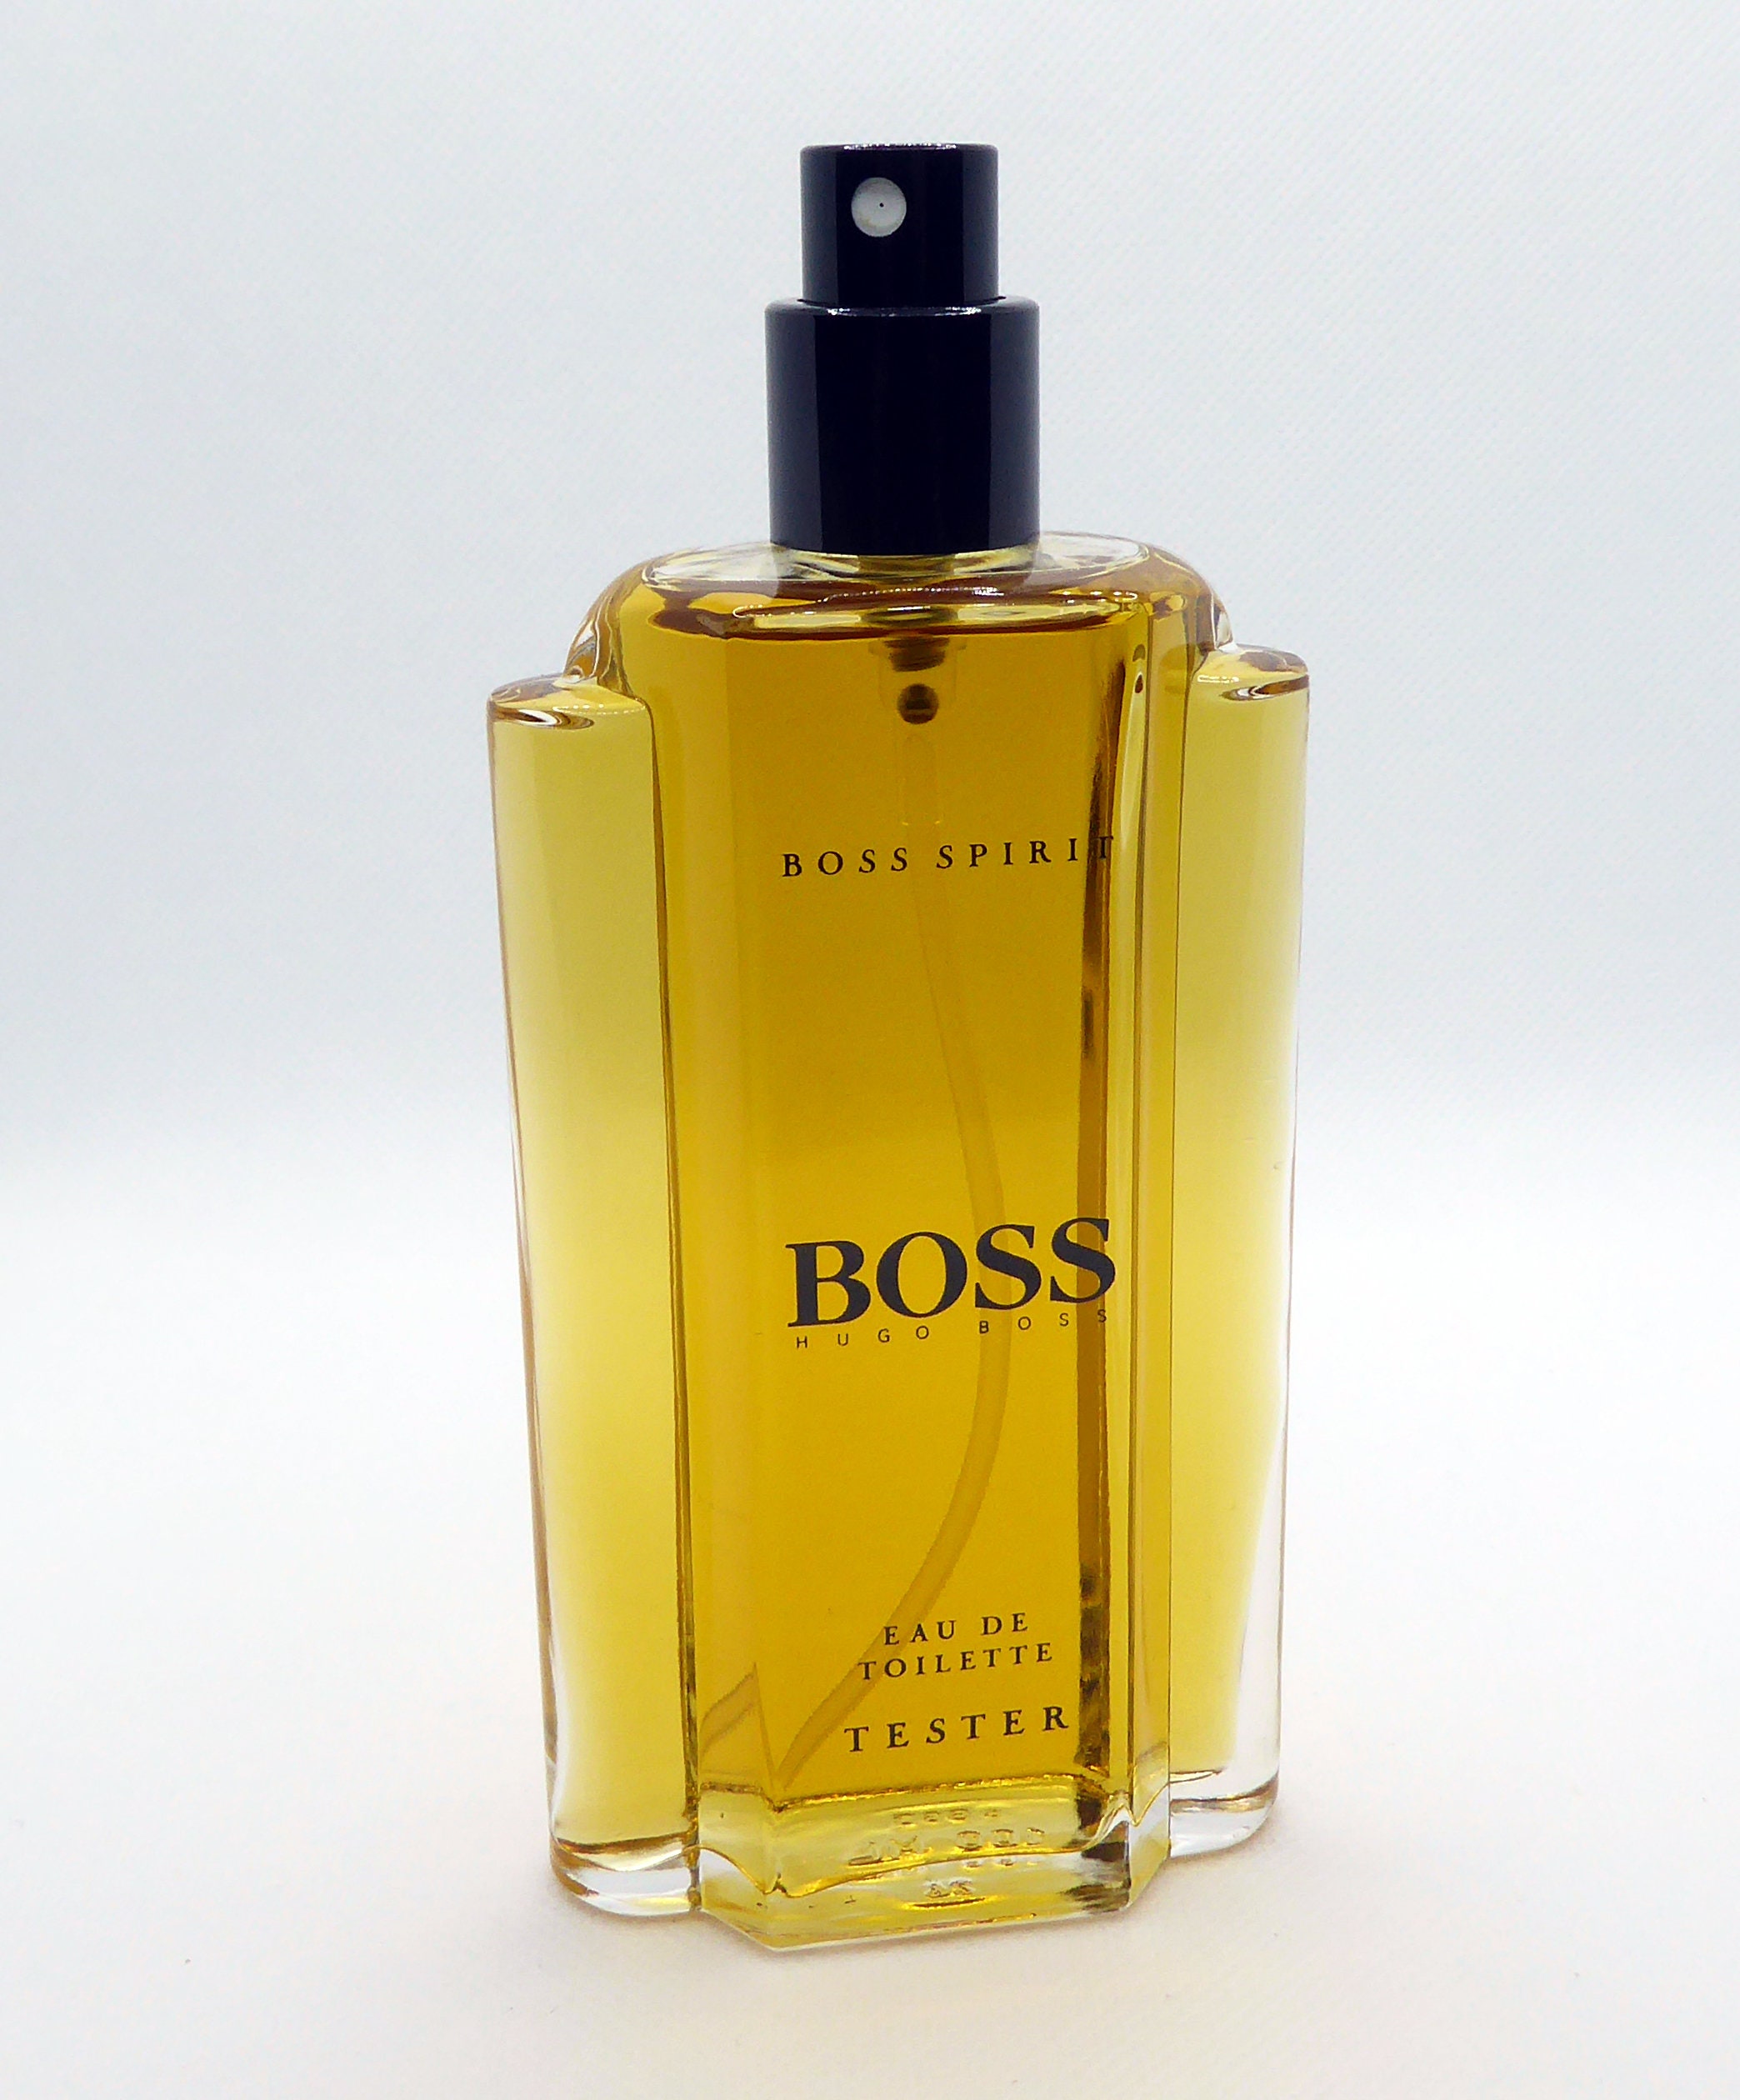 Hugo Boss Spirit. Hugo Boss Boss Spirit туалетная вода 2 мл. Духи Waterlily Tea Dress Zara. Boss spirit